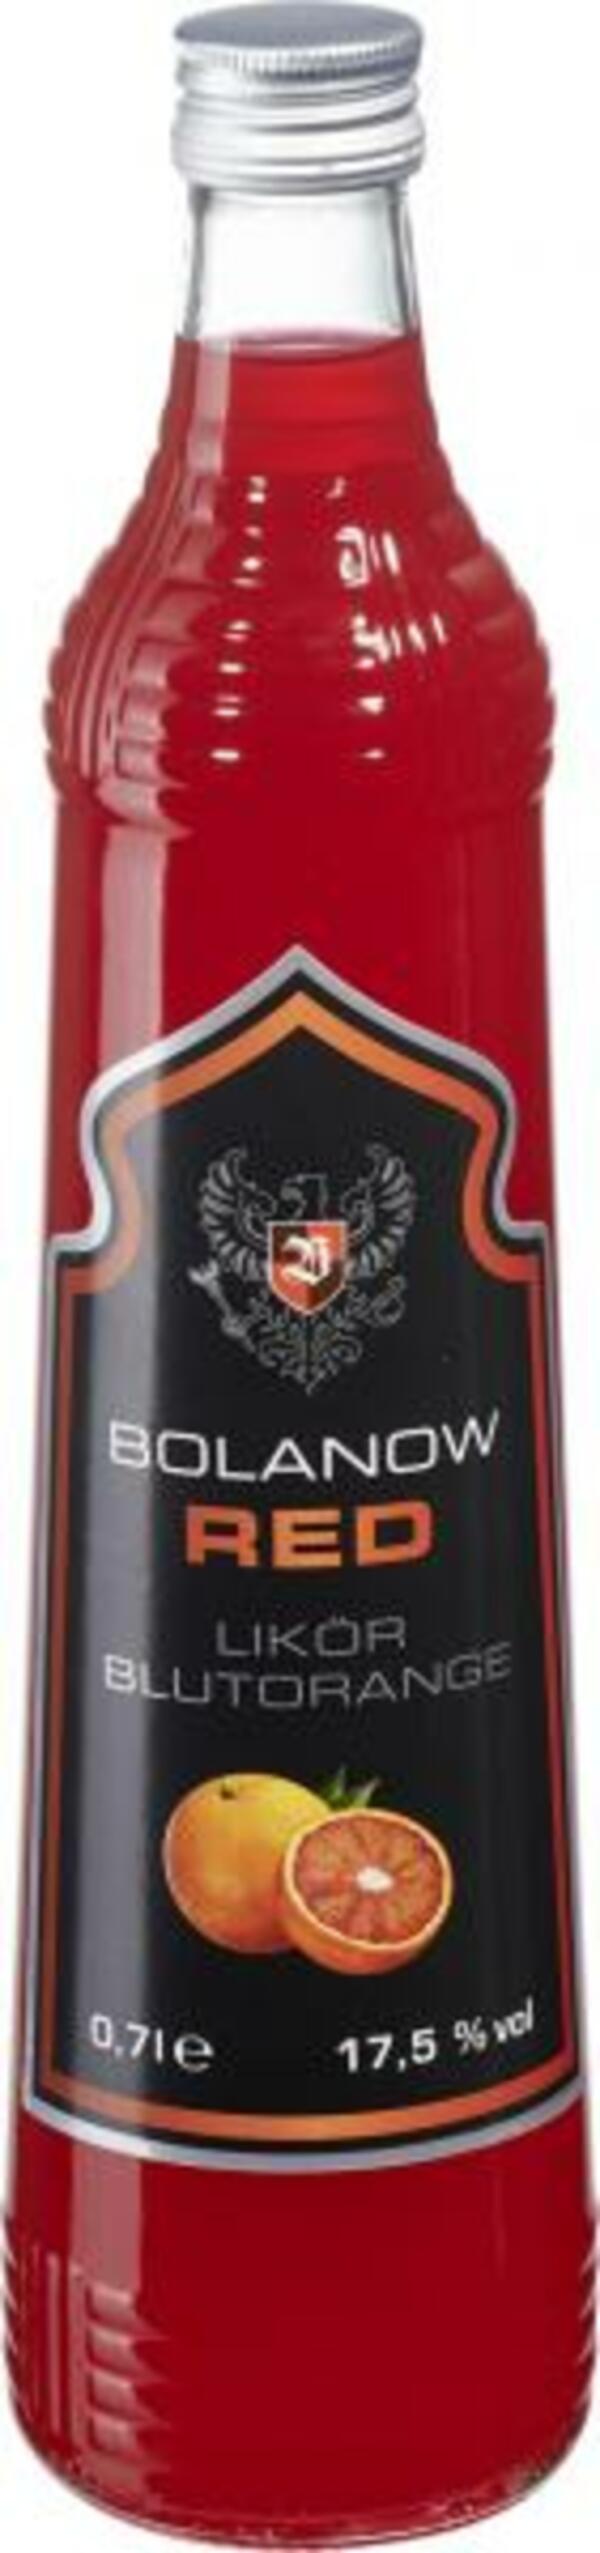 Bild 1 von Bolanow Wodka Red Likör Blutorange